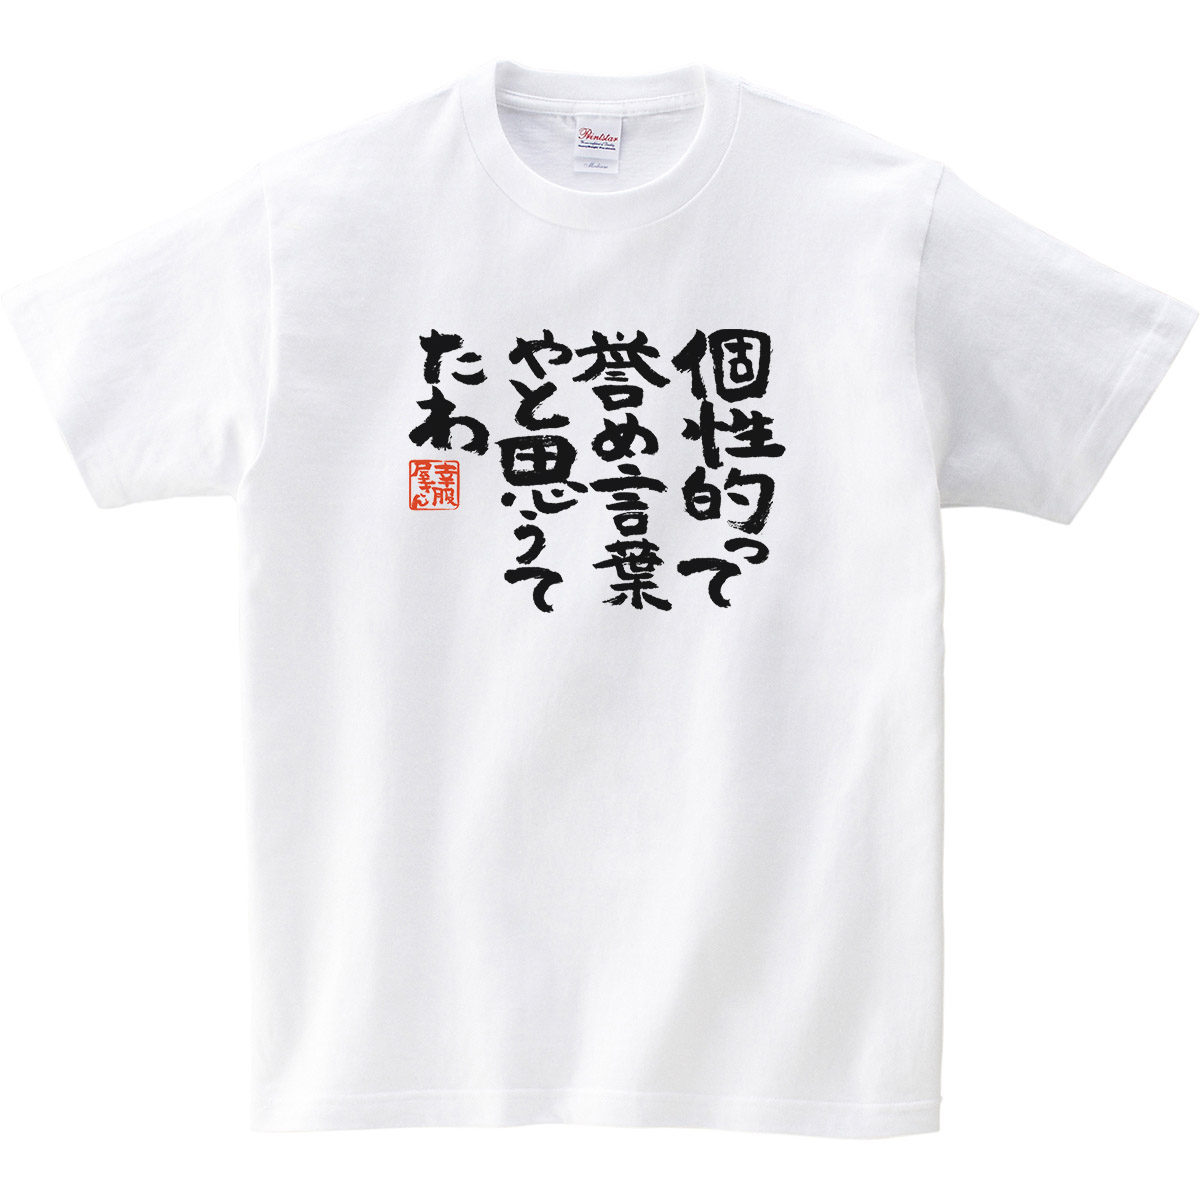 楽天市場 おもしろtシャツ 漢字 文字 個性って誉め言葉やと思うてたわ ティーシャツ ギフト プレゼント Ka300 02 Koufukuyaブランド 送料込 送料無料 おもしろtシャツ プレゼント幸服屋